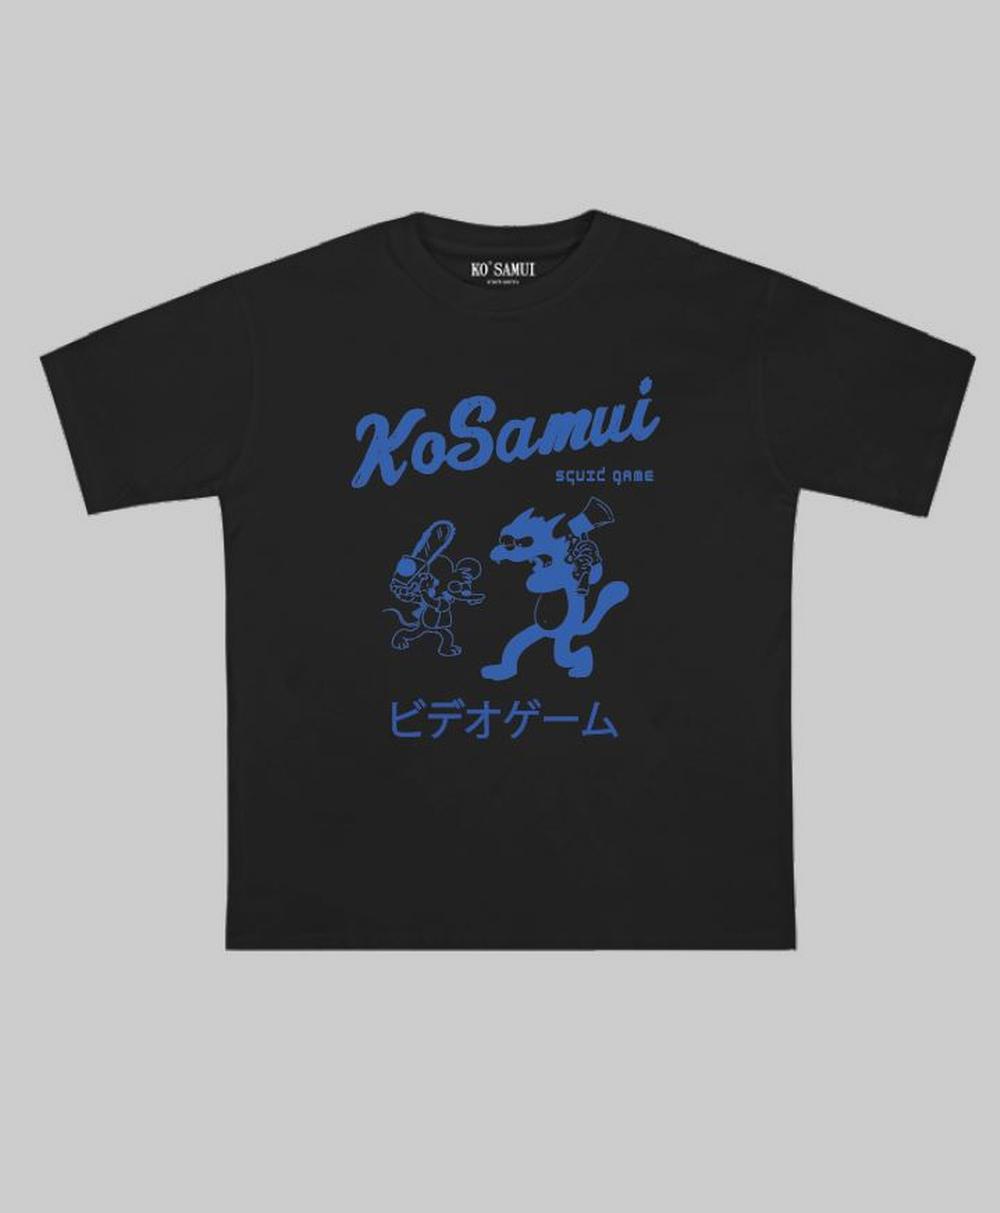 Ko Samui - T-shirt squid game nero - MTTG152 SQUID